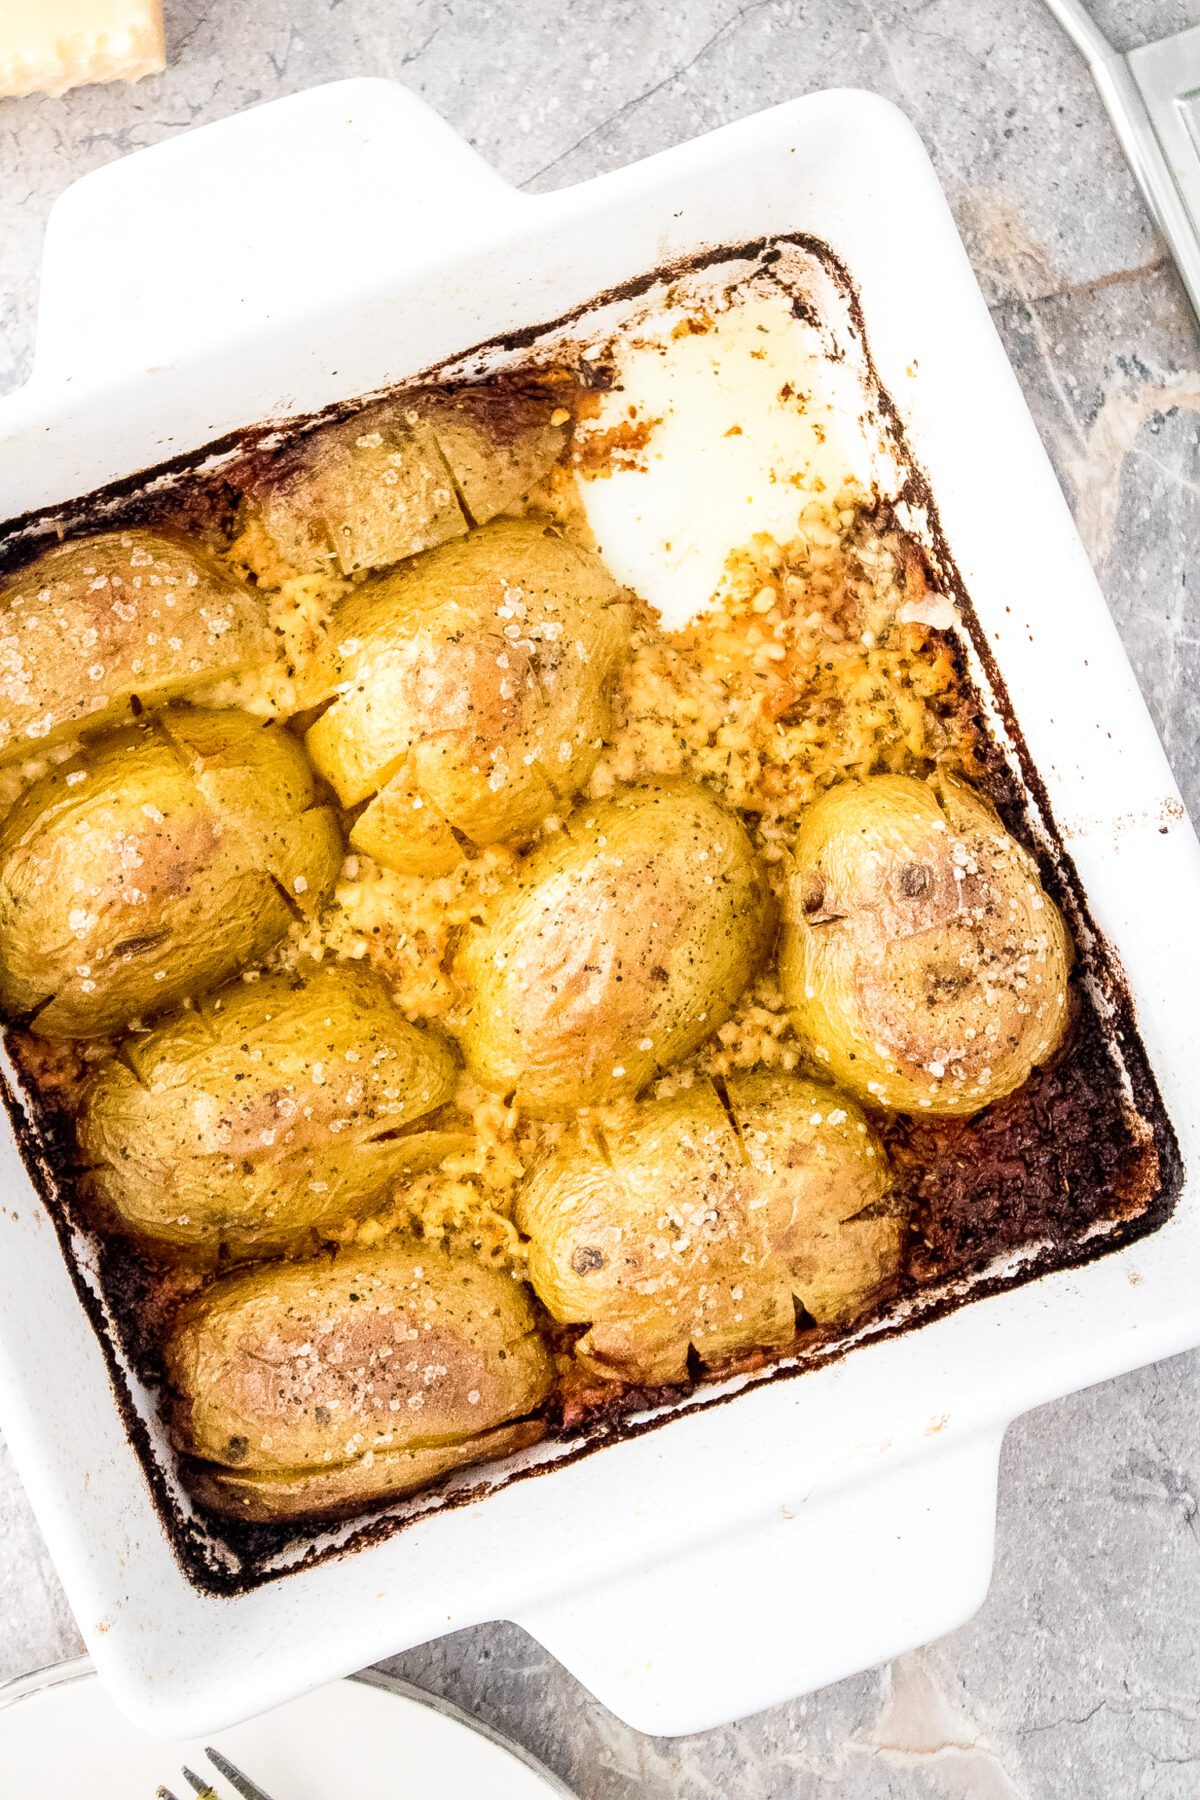 Garlic Parmesan baked Potatoes in a 8x8 baking dish